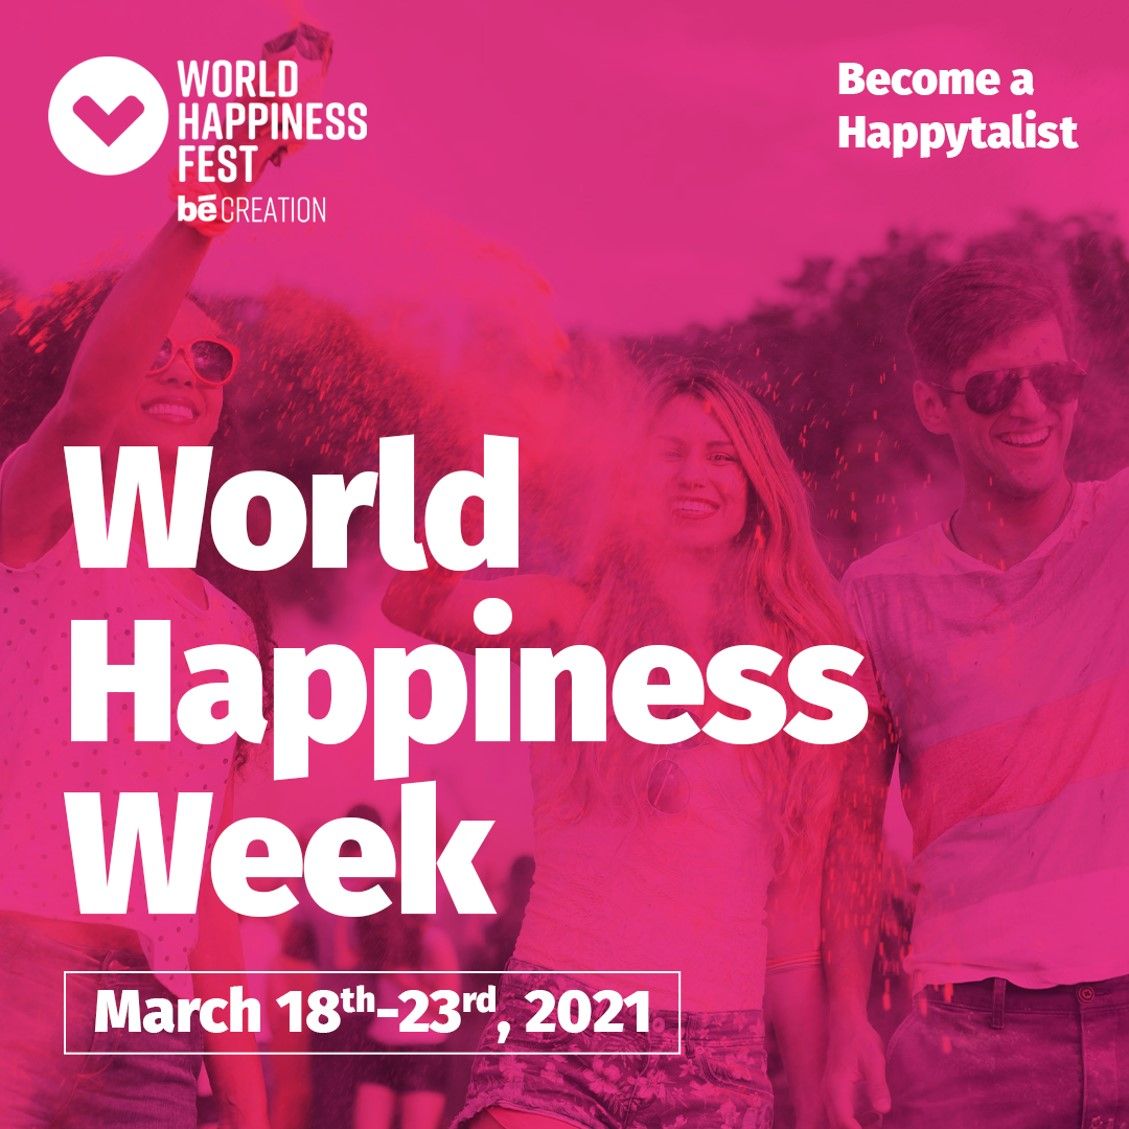 World Happiness Fest celebra la Semana mundial de la felicidad del 18 al 23 marzo 2021